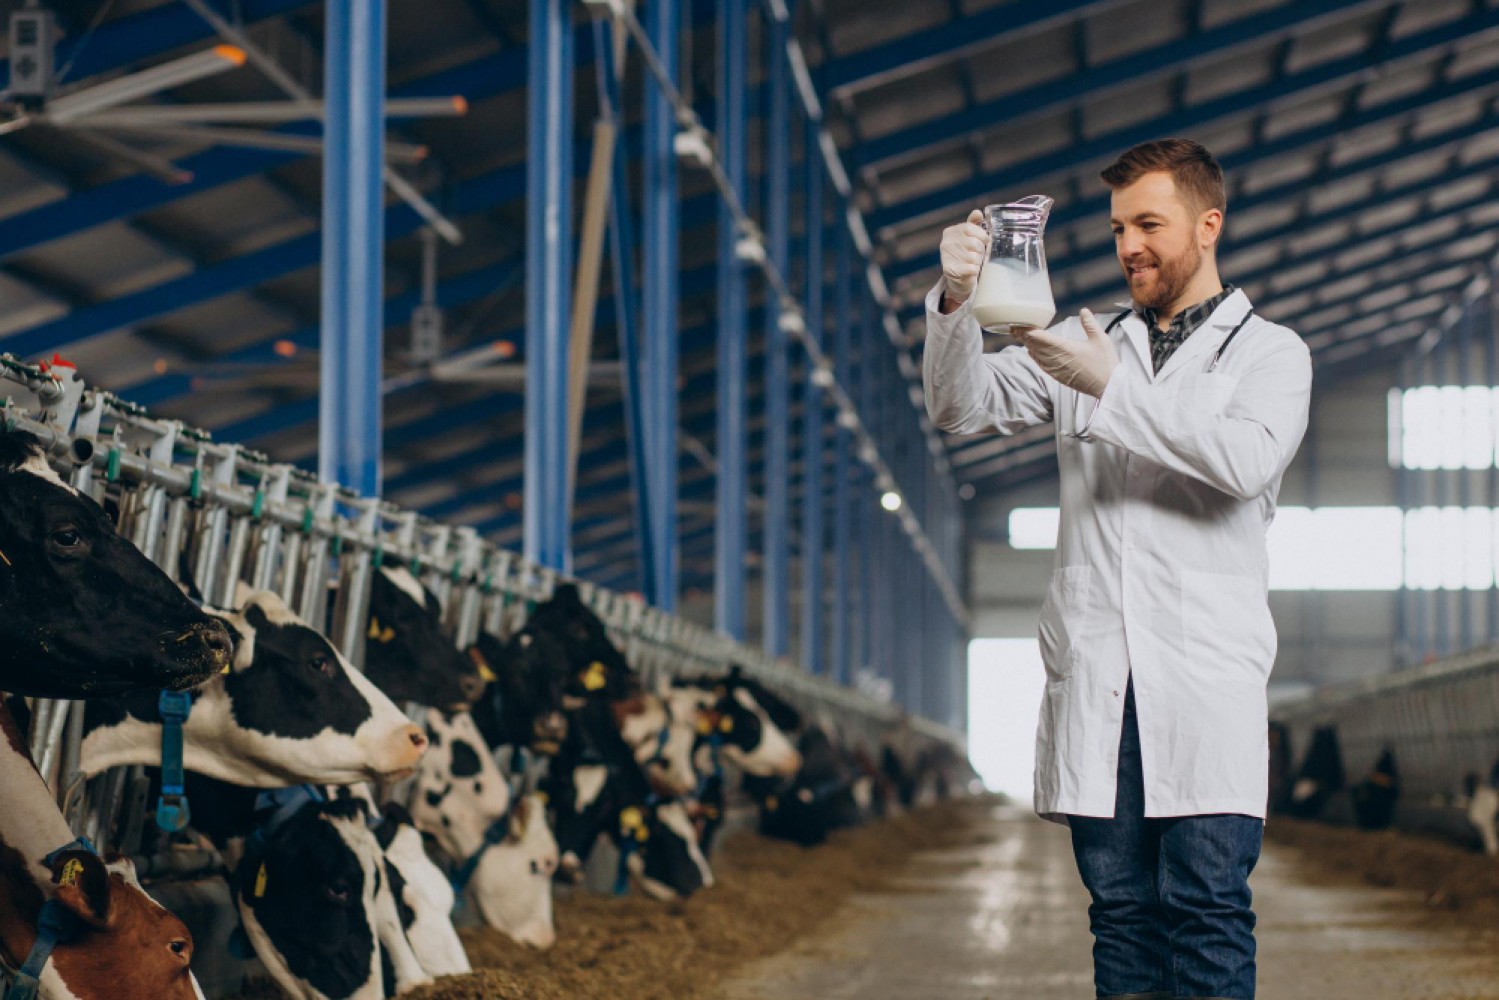 Актинизация молока — передовой метод обработки, способствующий улучшению качества продукции в молочной промышленности. Статья подробно освещает технологию, оборудование и выгоды данного процесса.